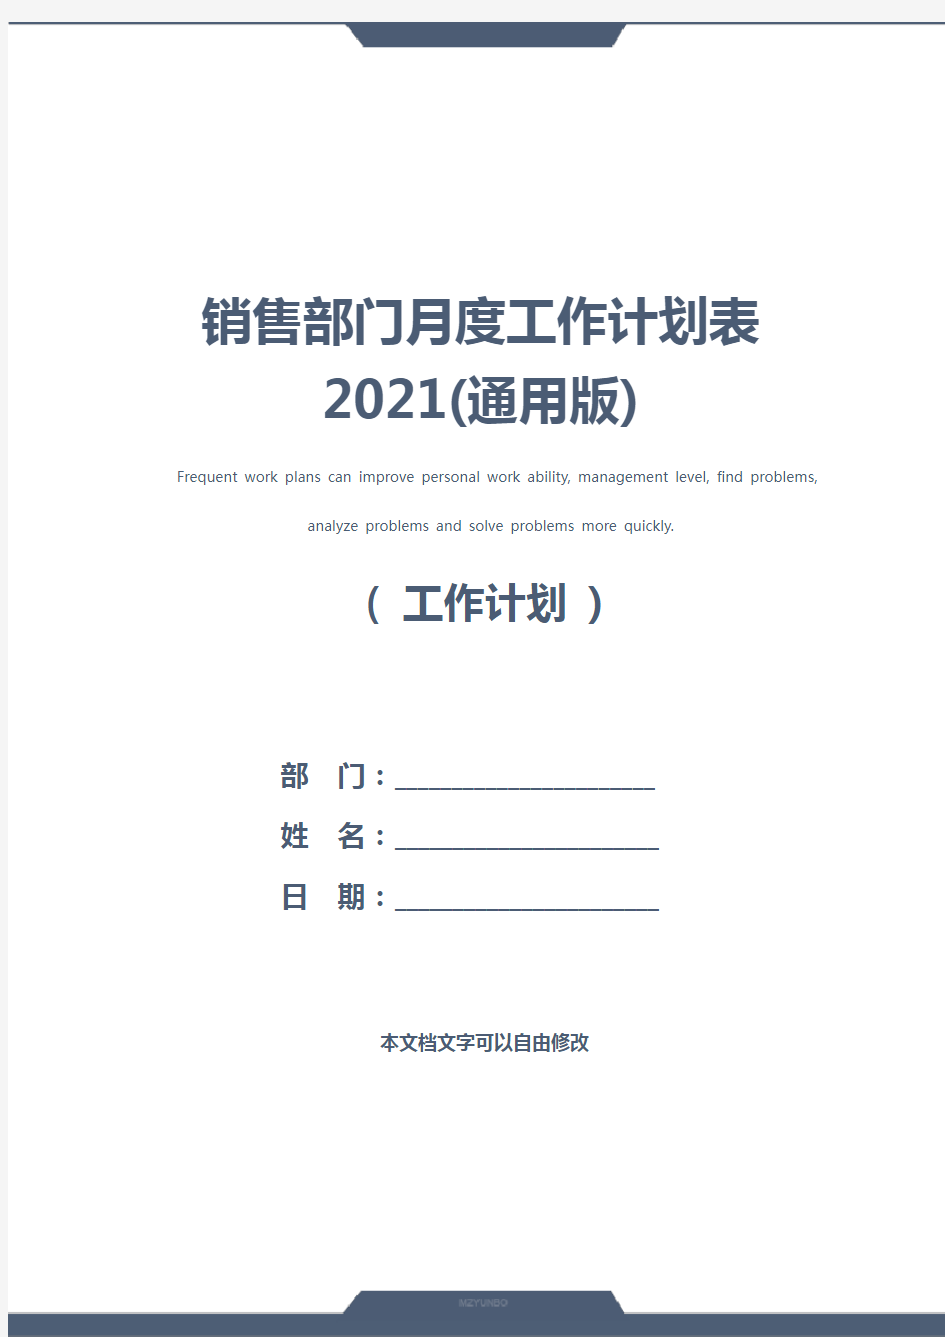 销售部门月度工作计划表2021(通用版)